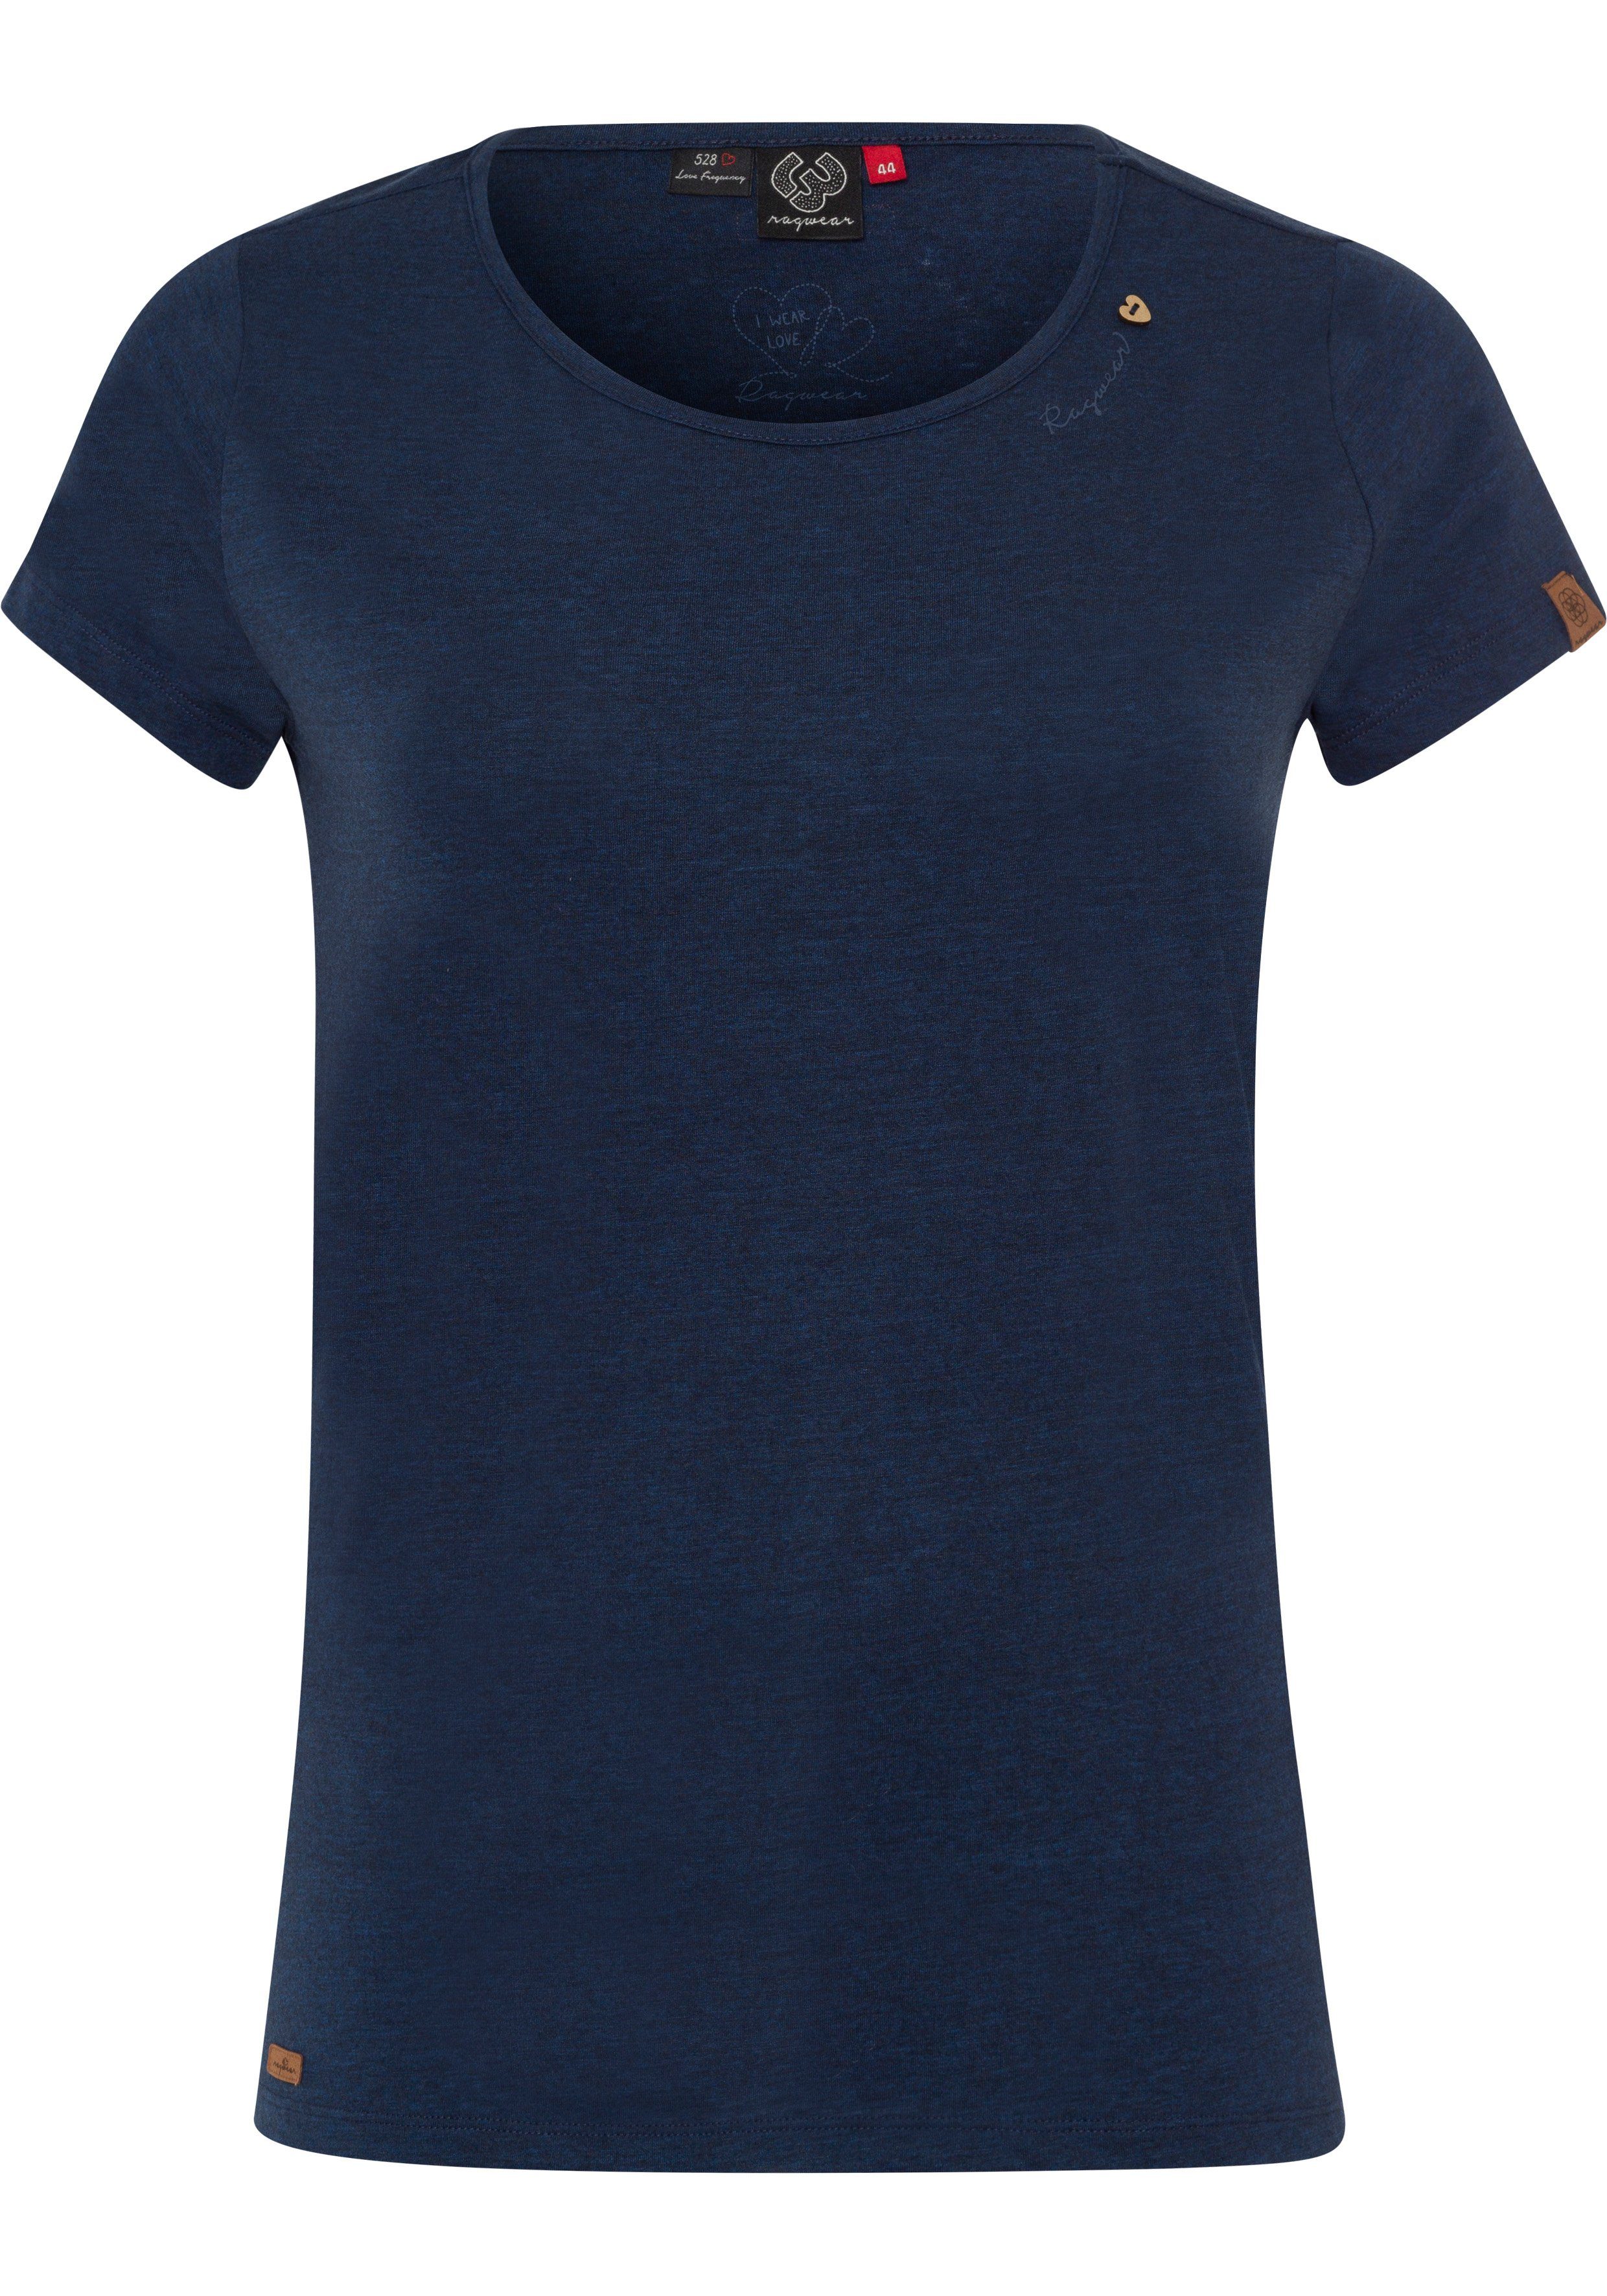 Ragwear Plus T-Shirt MINT A Logoschriftzug Holzoptik mit PLUS in 2028 und Zierknopf-Applikation navy natürlicher